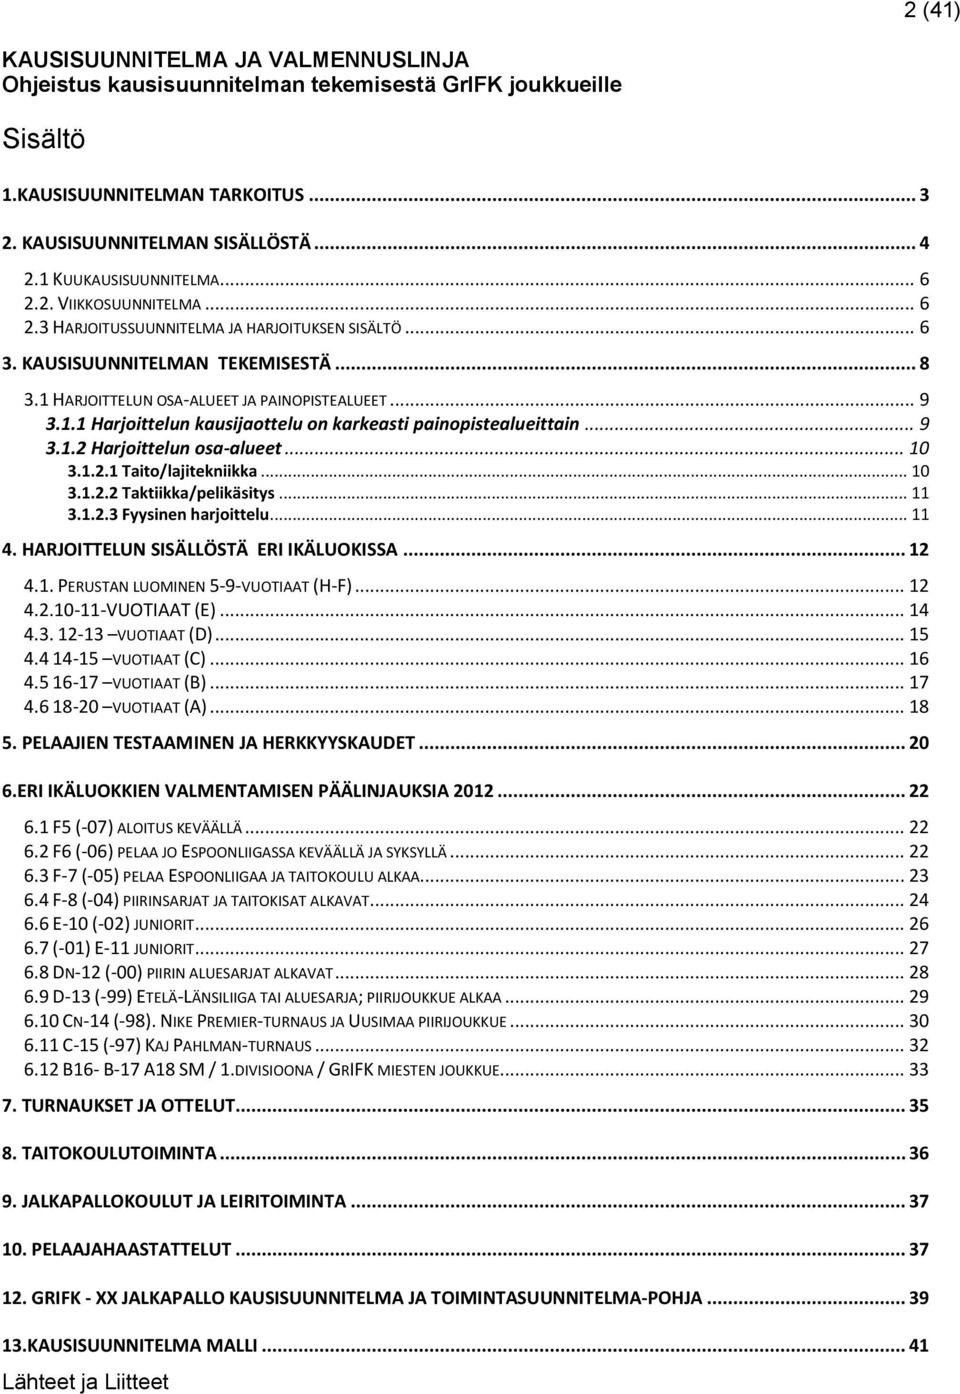 1 (41) KAUSISUUNNITELMA JA VALMENNUSLINJA Ohjeistus kausisuunnitelman  tekemisestä GrIFK joukkueille Arto Tuohisto-Kokko - PDF Ilmainen lataus